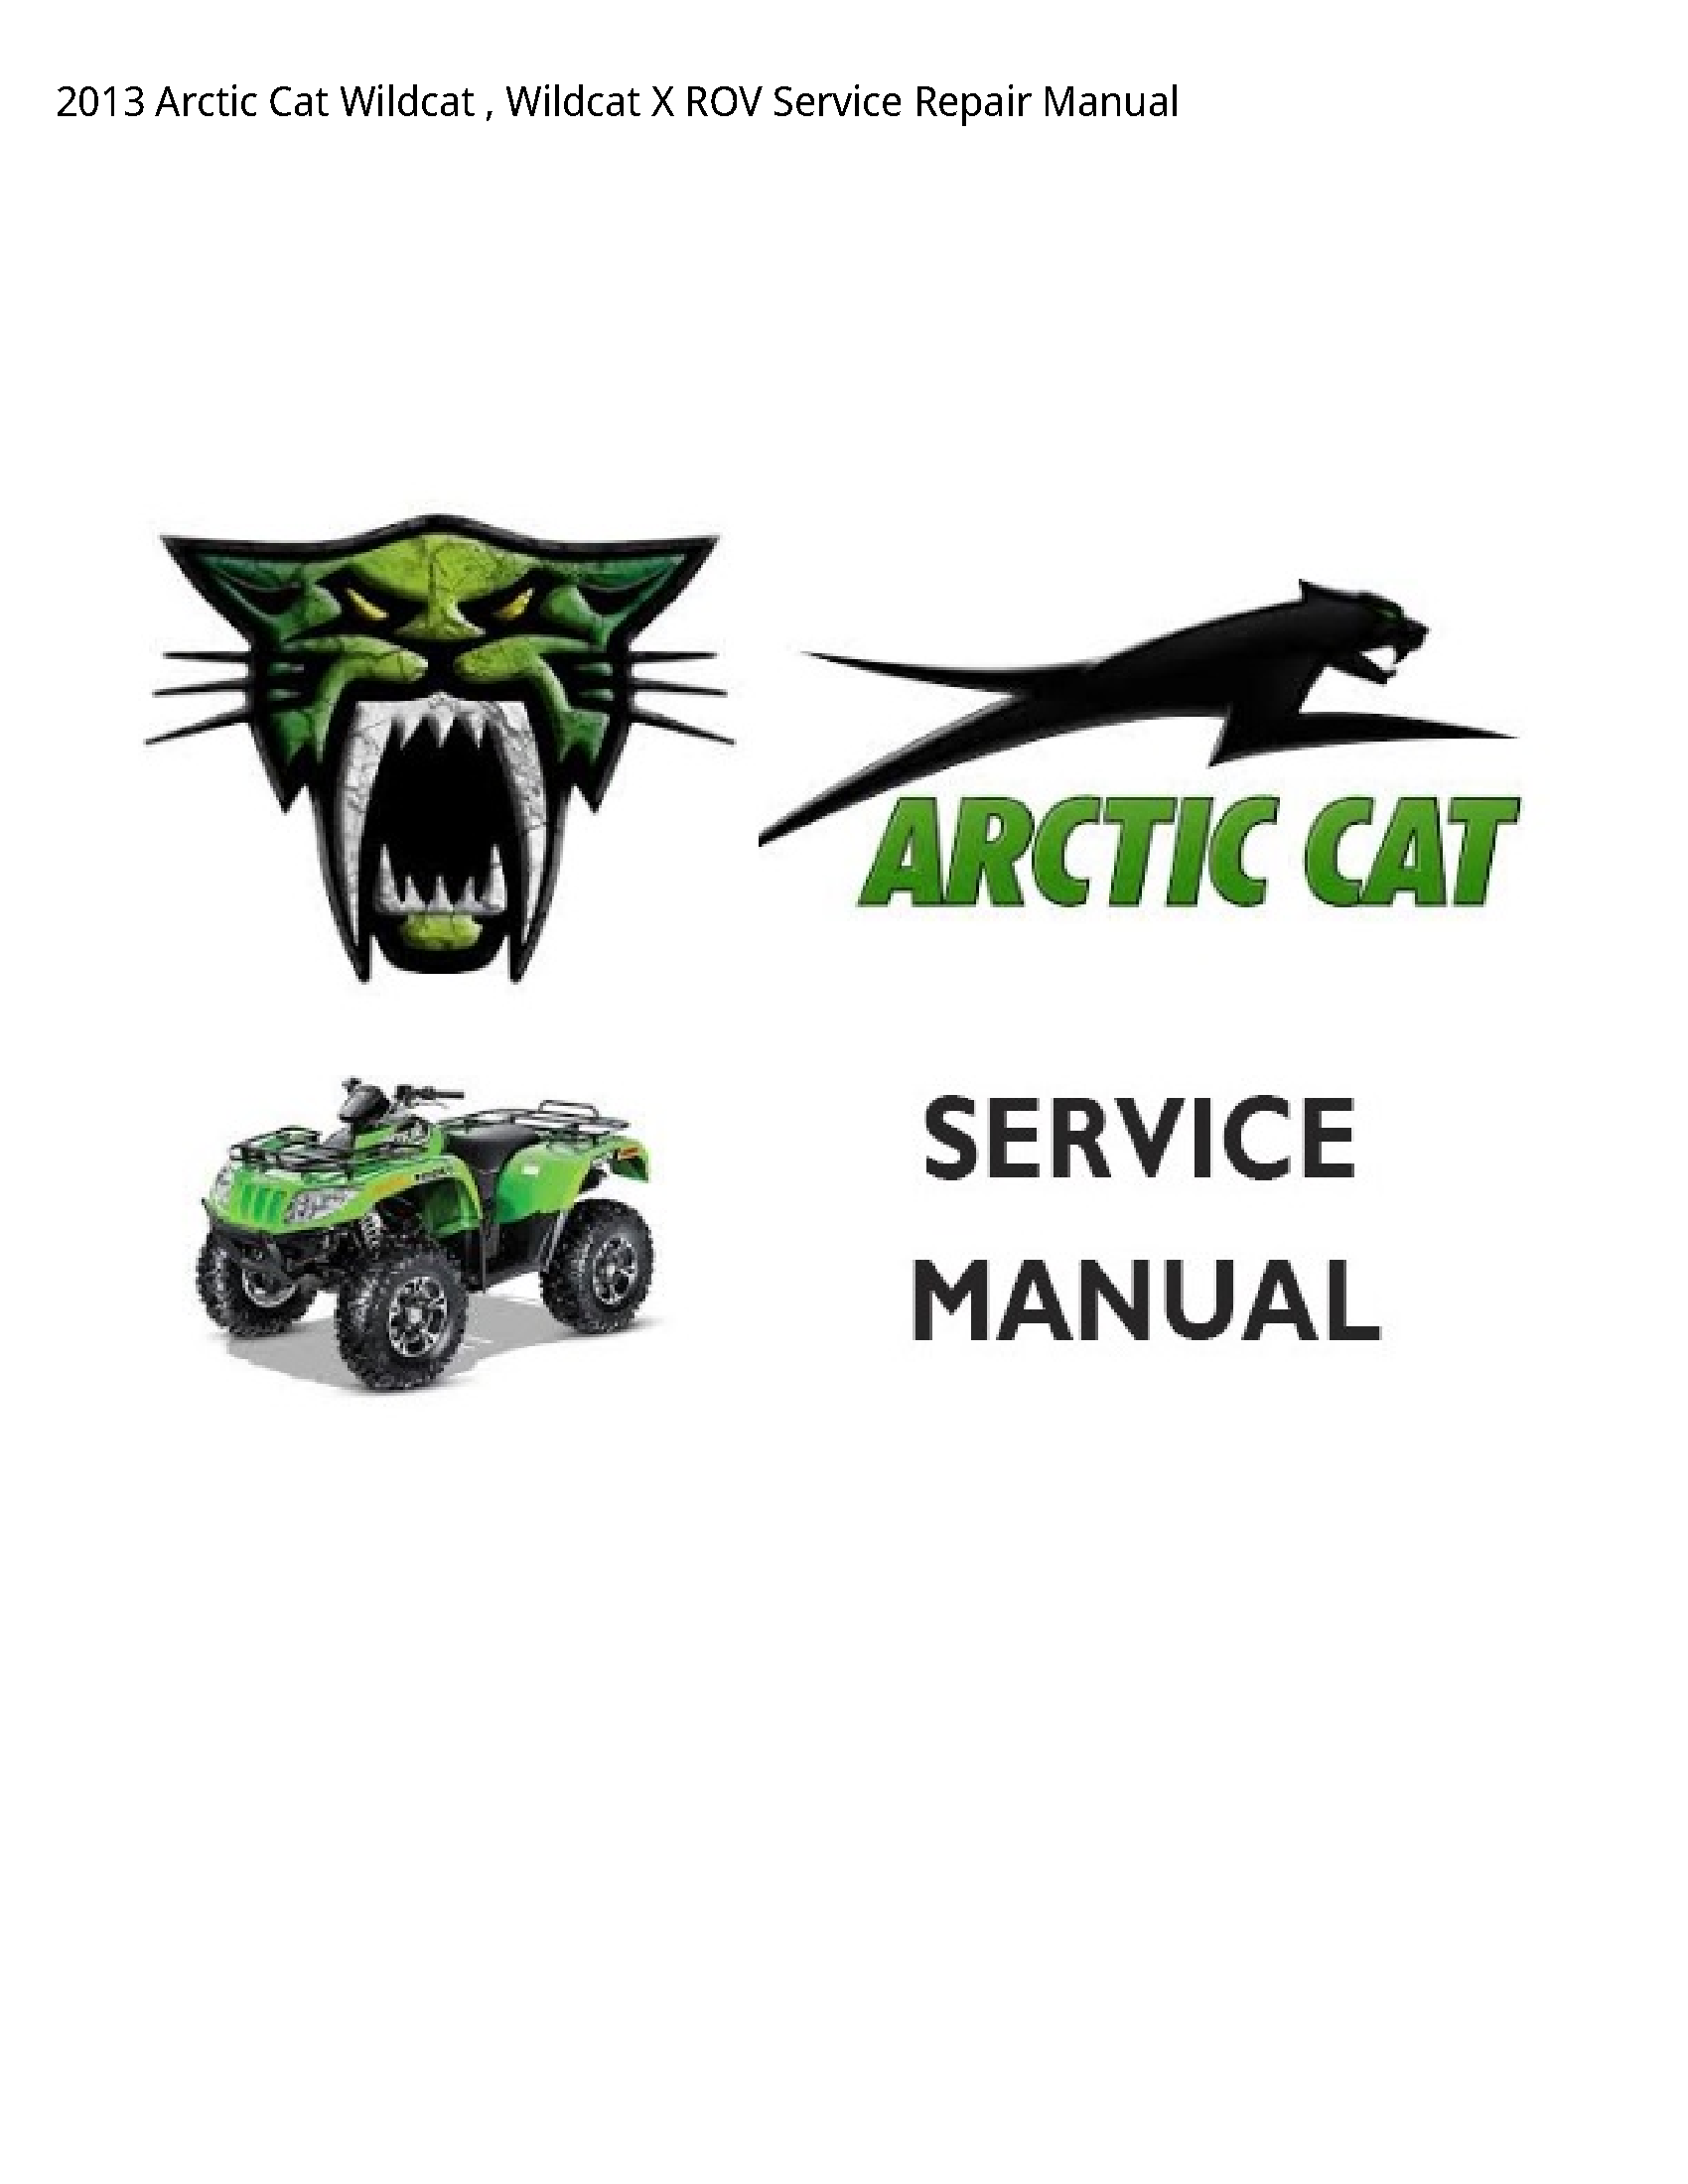 Arctic Cat Wildcat Wildcat ROV manual